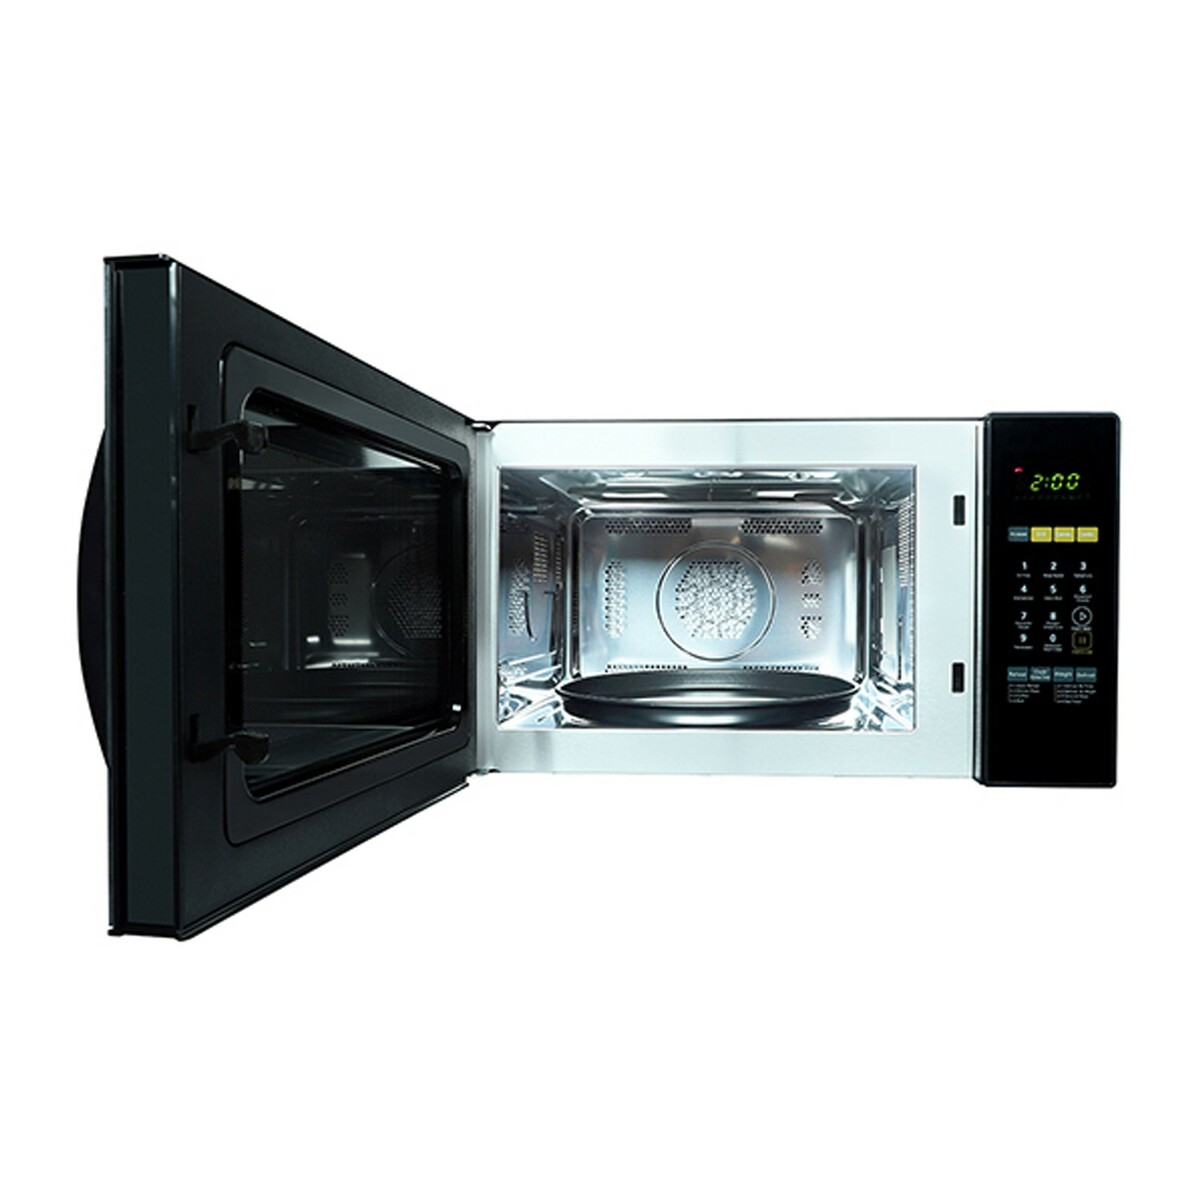 Godrej Microwave Oven GME 728 CF1PM Golden Rose 28Ltr